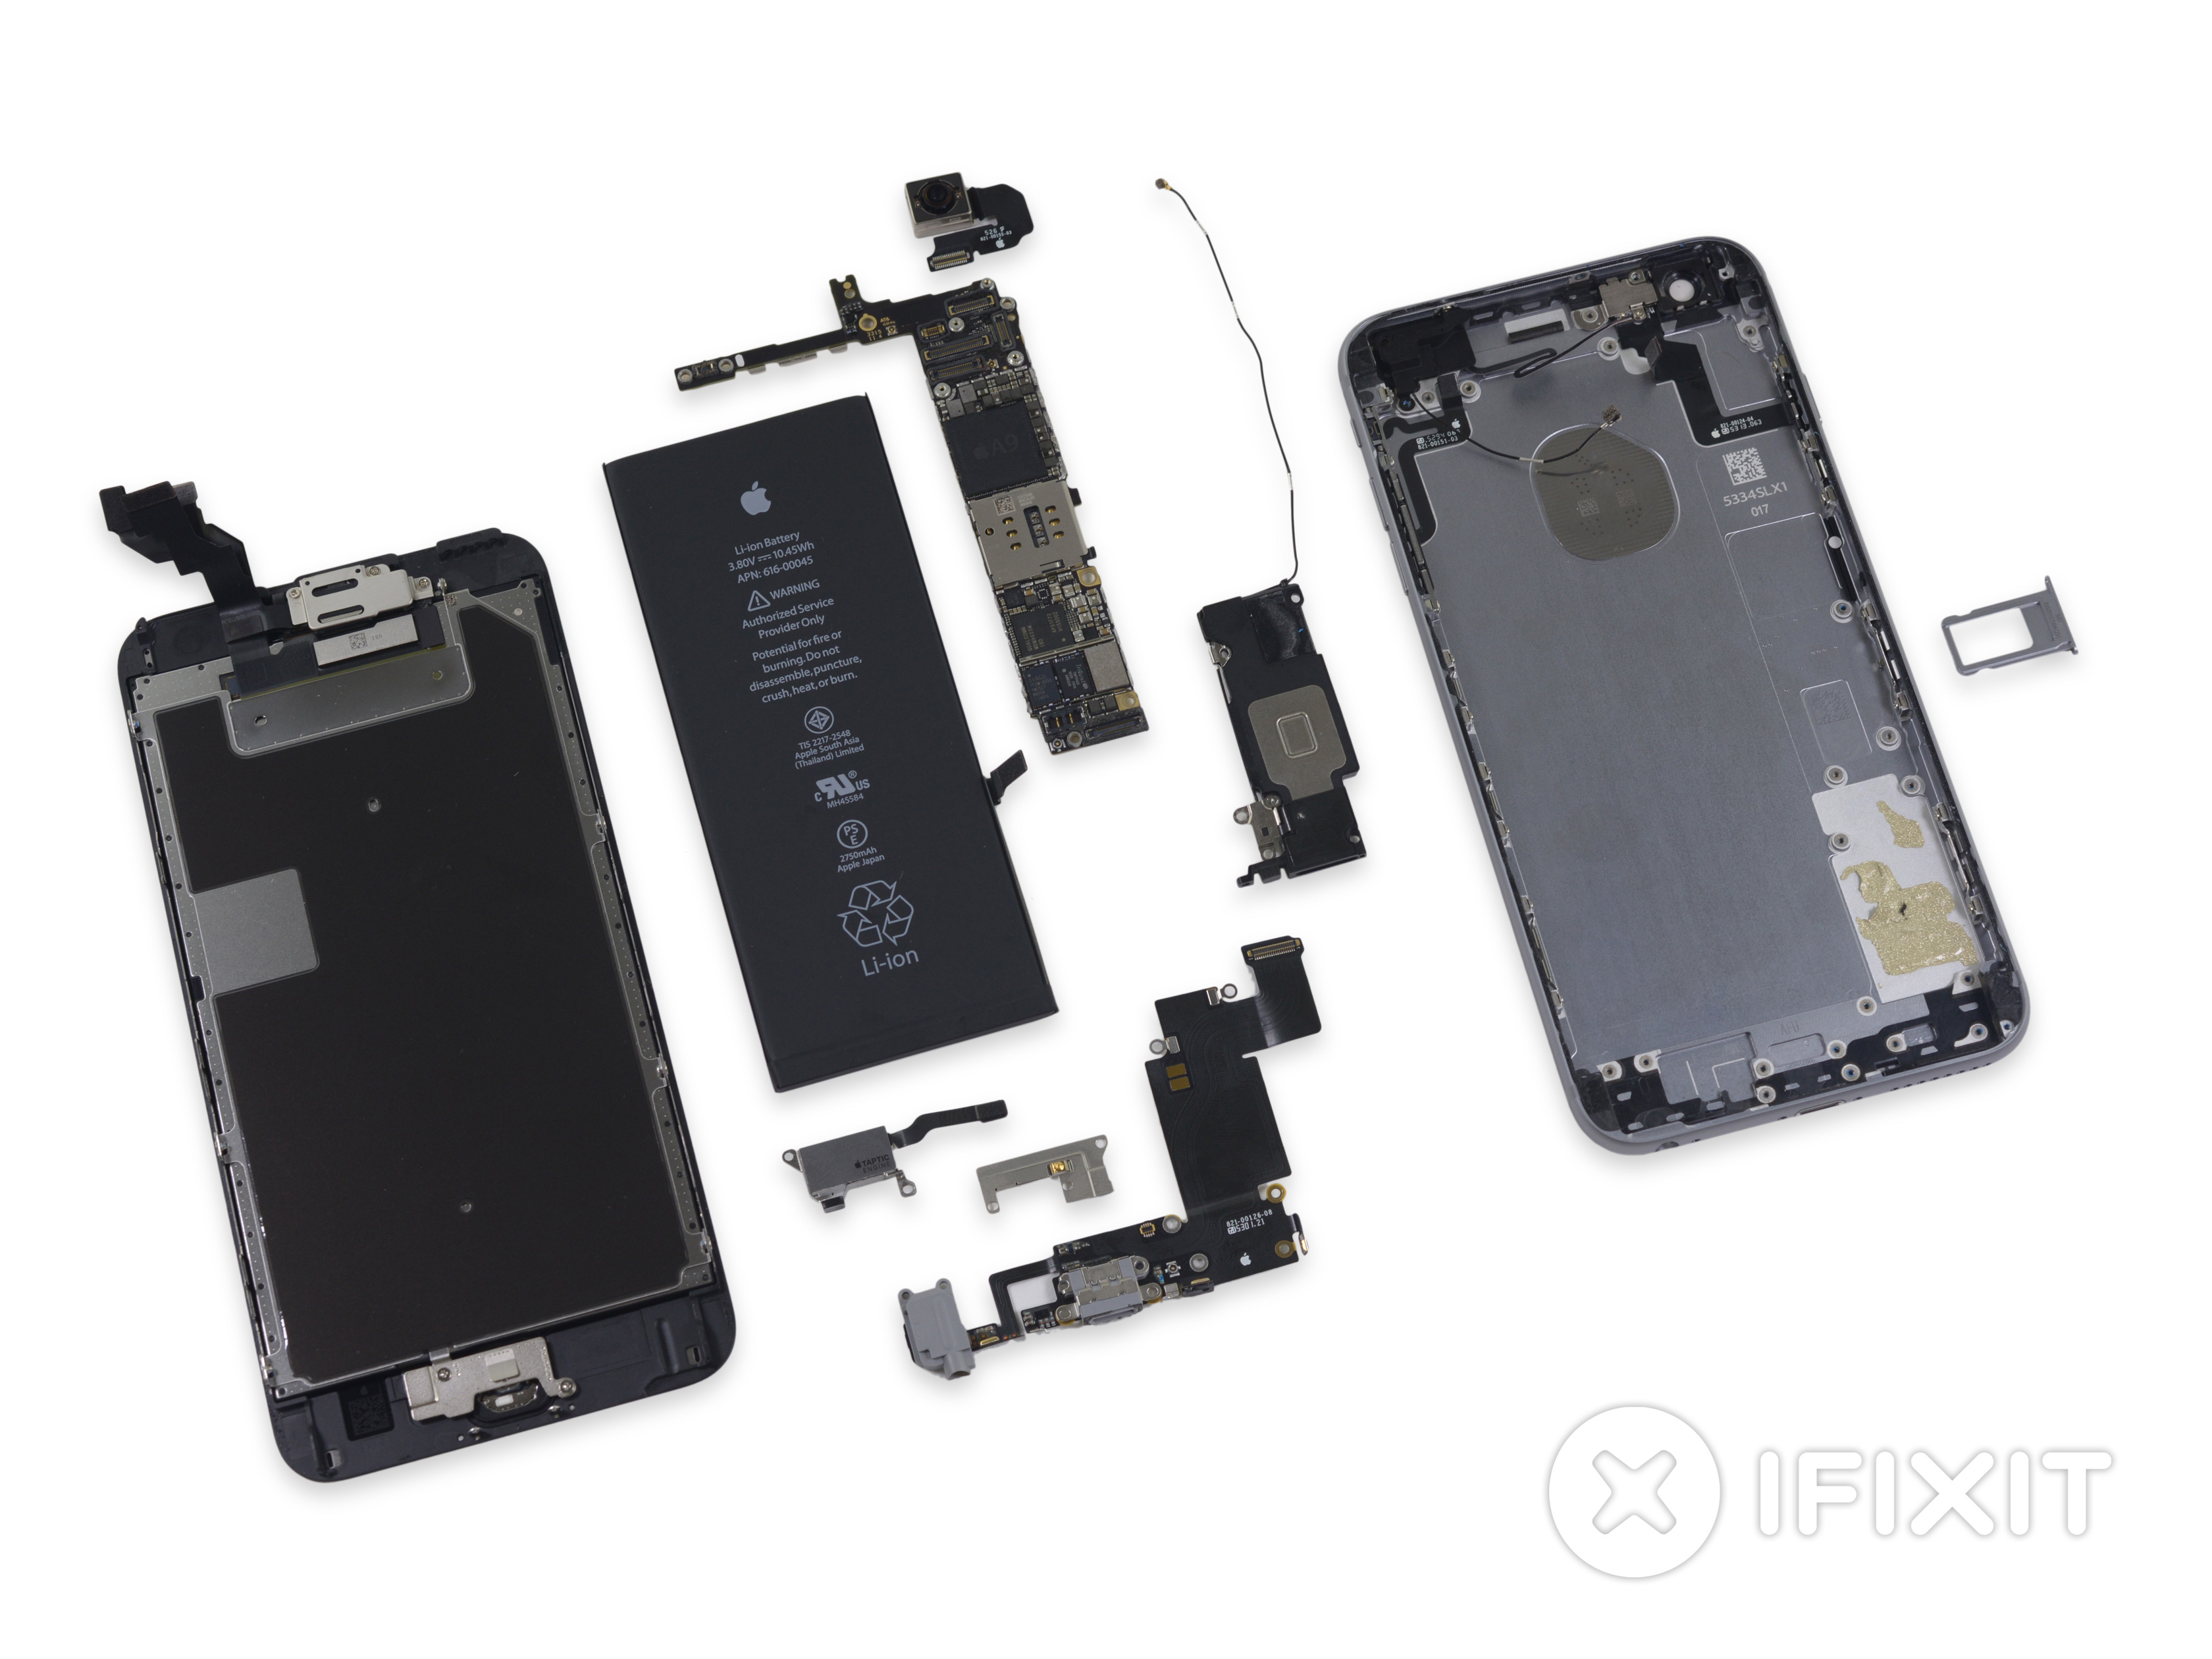 iPhone 6s Plus desmontado pela iFixit